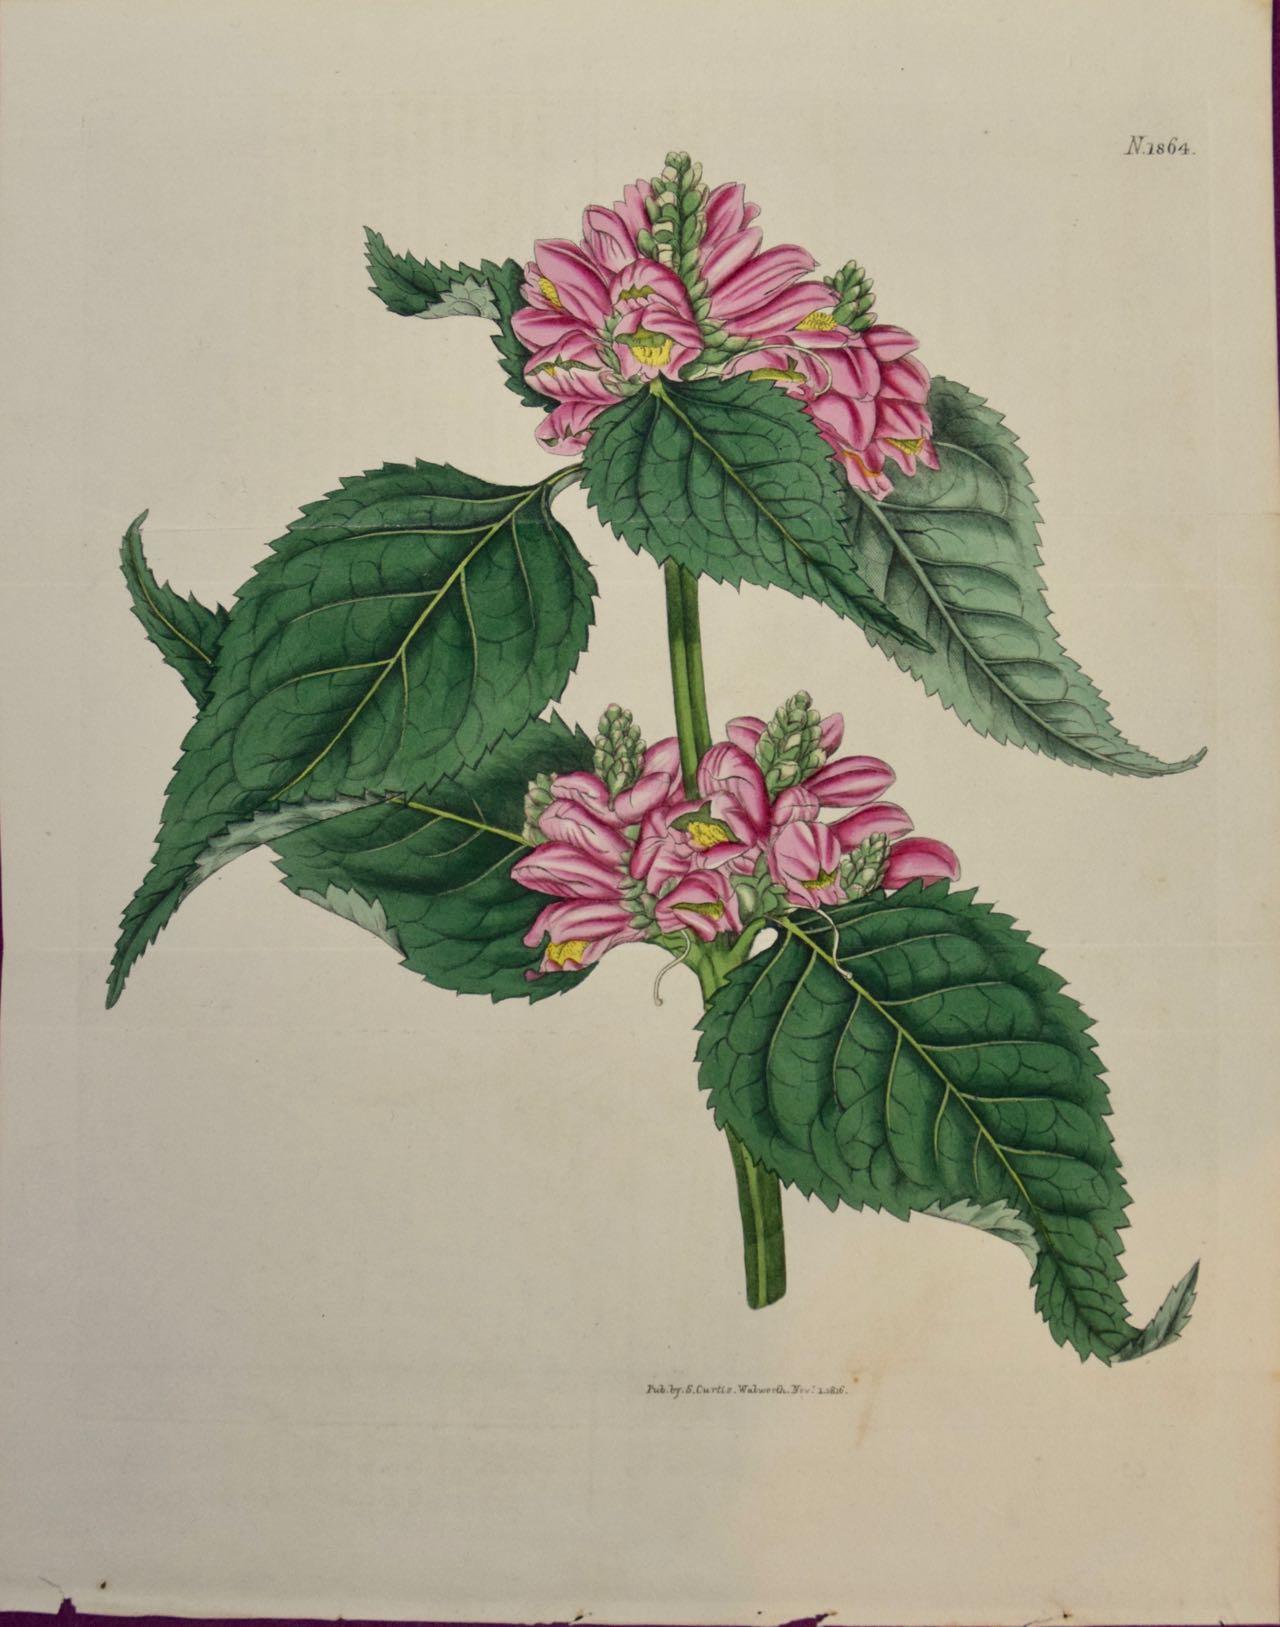 Flowering Lyons' Chelone Botanical: Eine handkolorierte Gravur von Curtis aus dem 19. Jahrhundert